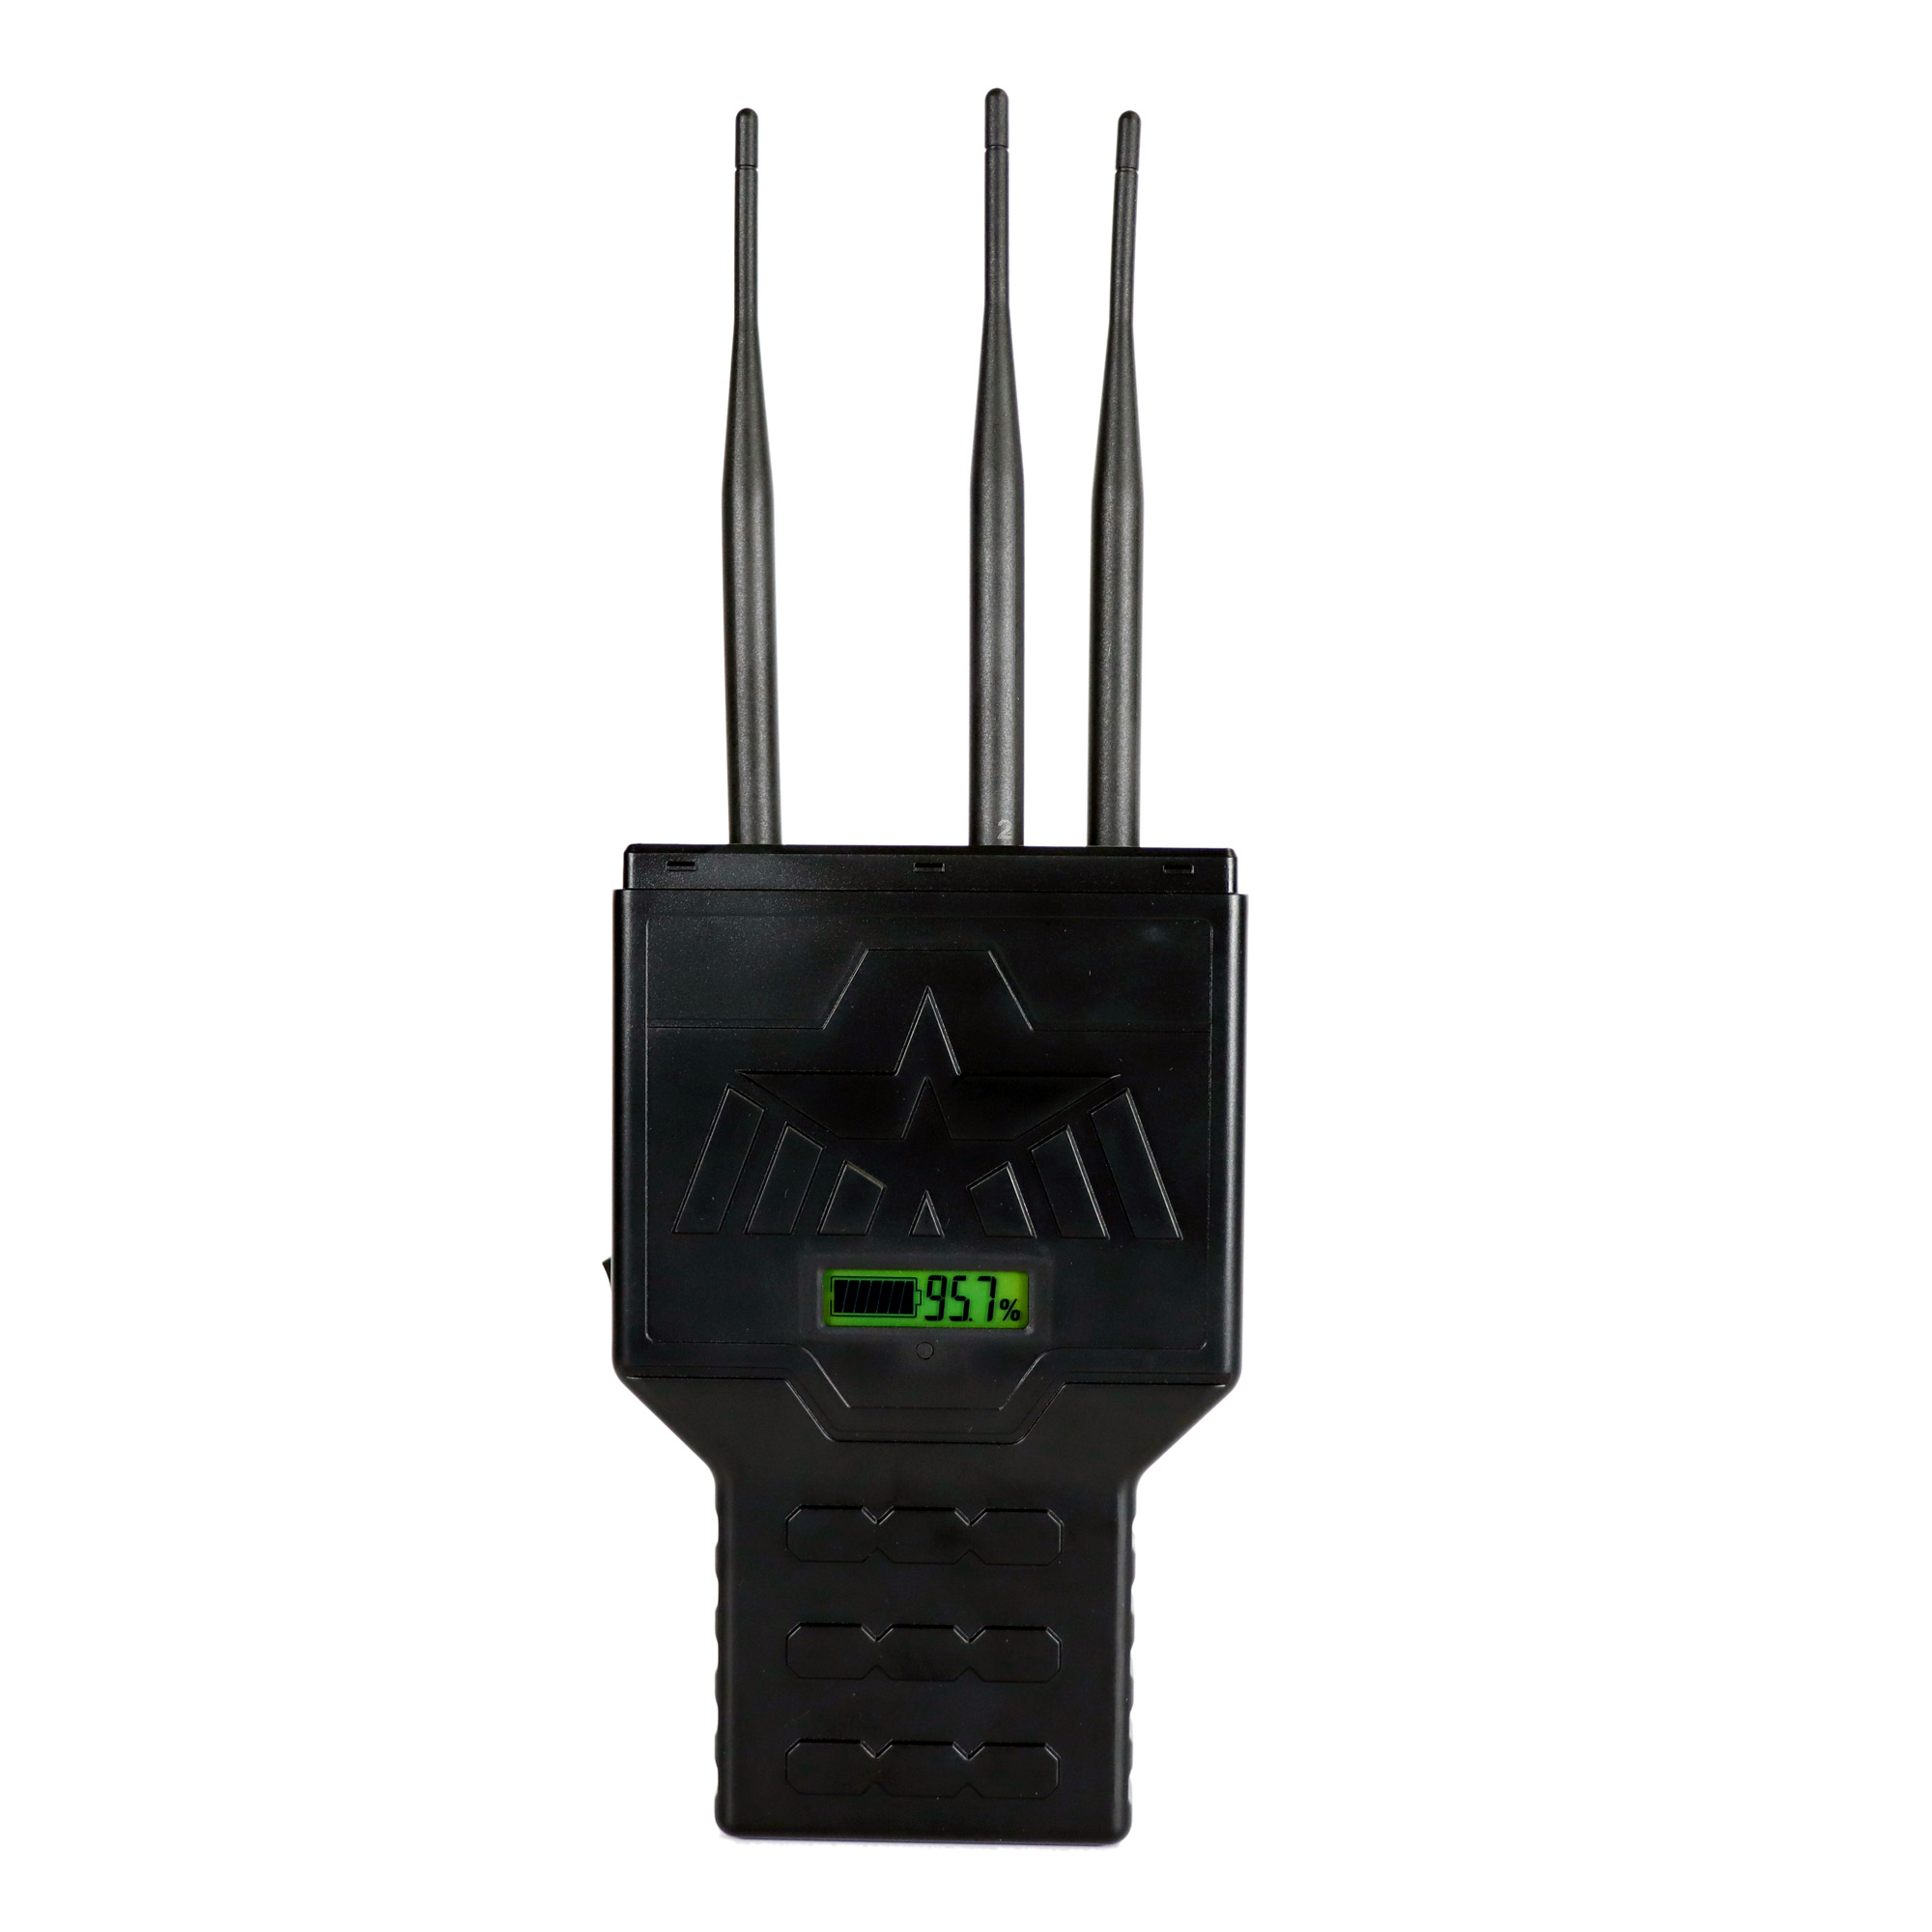 High Tech Telefon WLAN Signal störsender NZ-150W